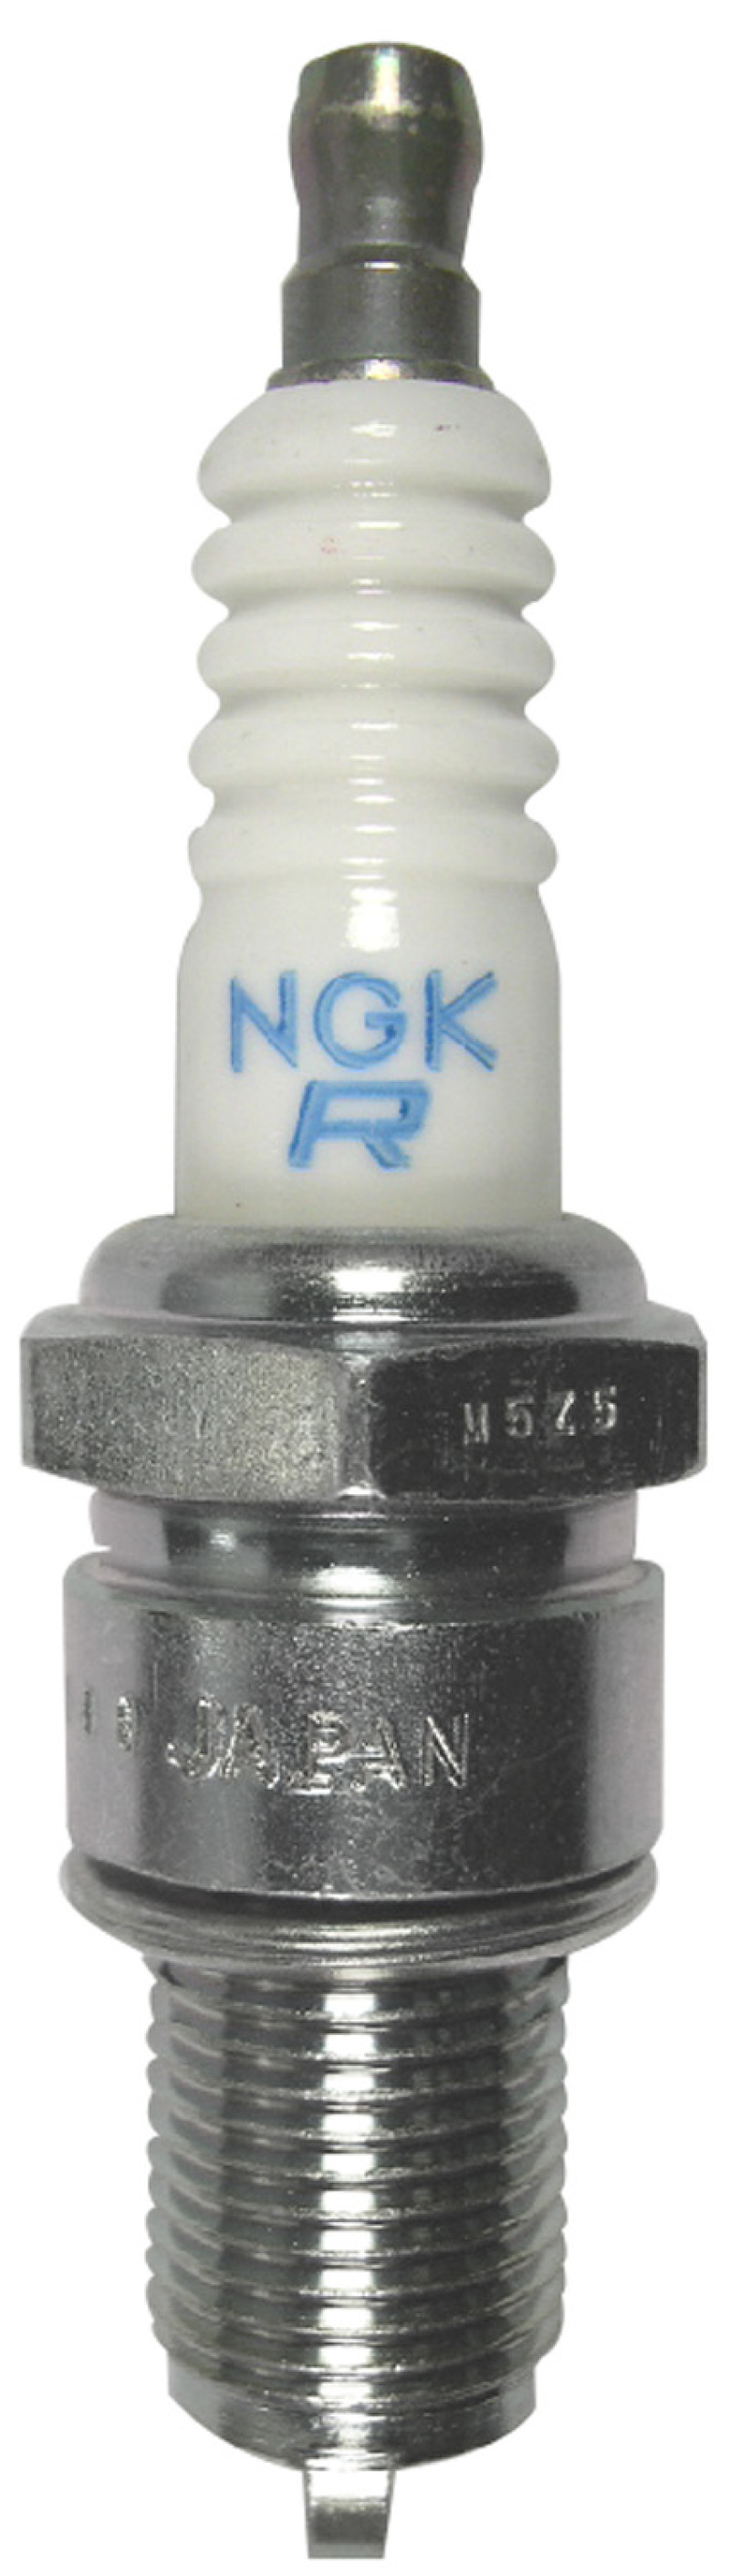 NGK Standard Spark Plug Box of 4 (BPR7ES SOLID) - 3785